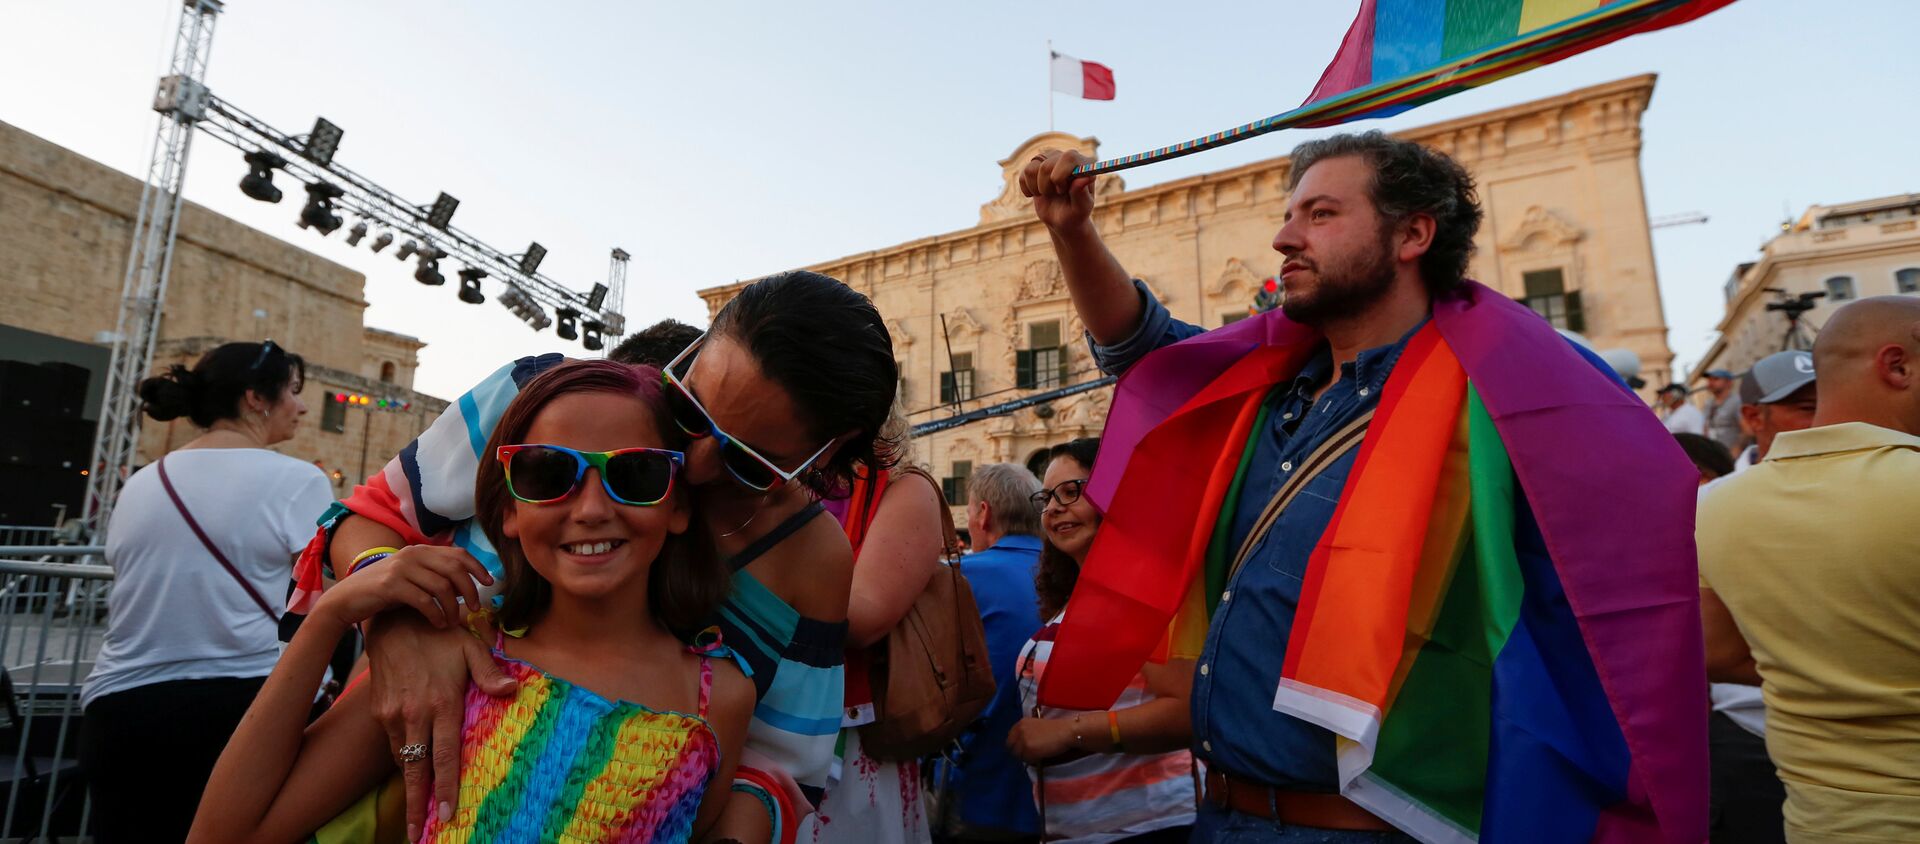 Ljudi na ulicama slave nakon proglasa o legalizaciji istopolnih brakova na Malti - Sputnik Srbija, 1920, 29.04.2021